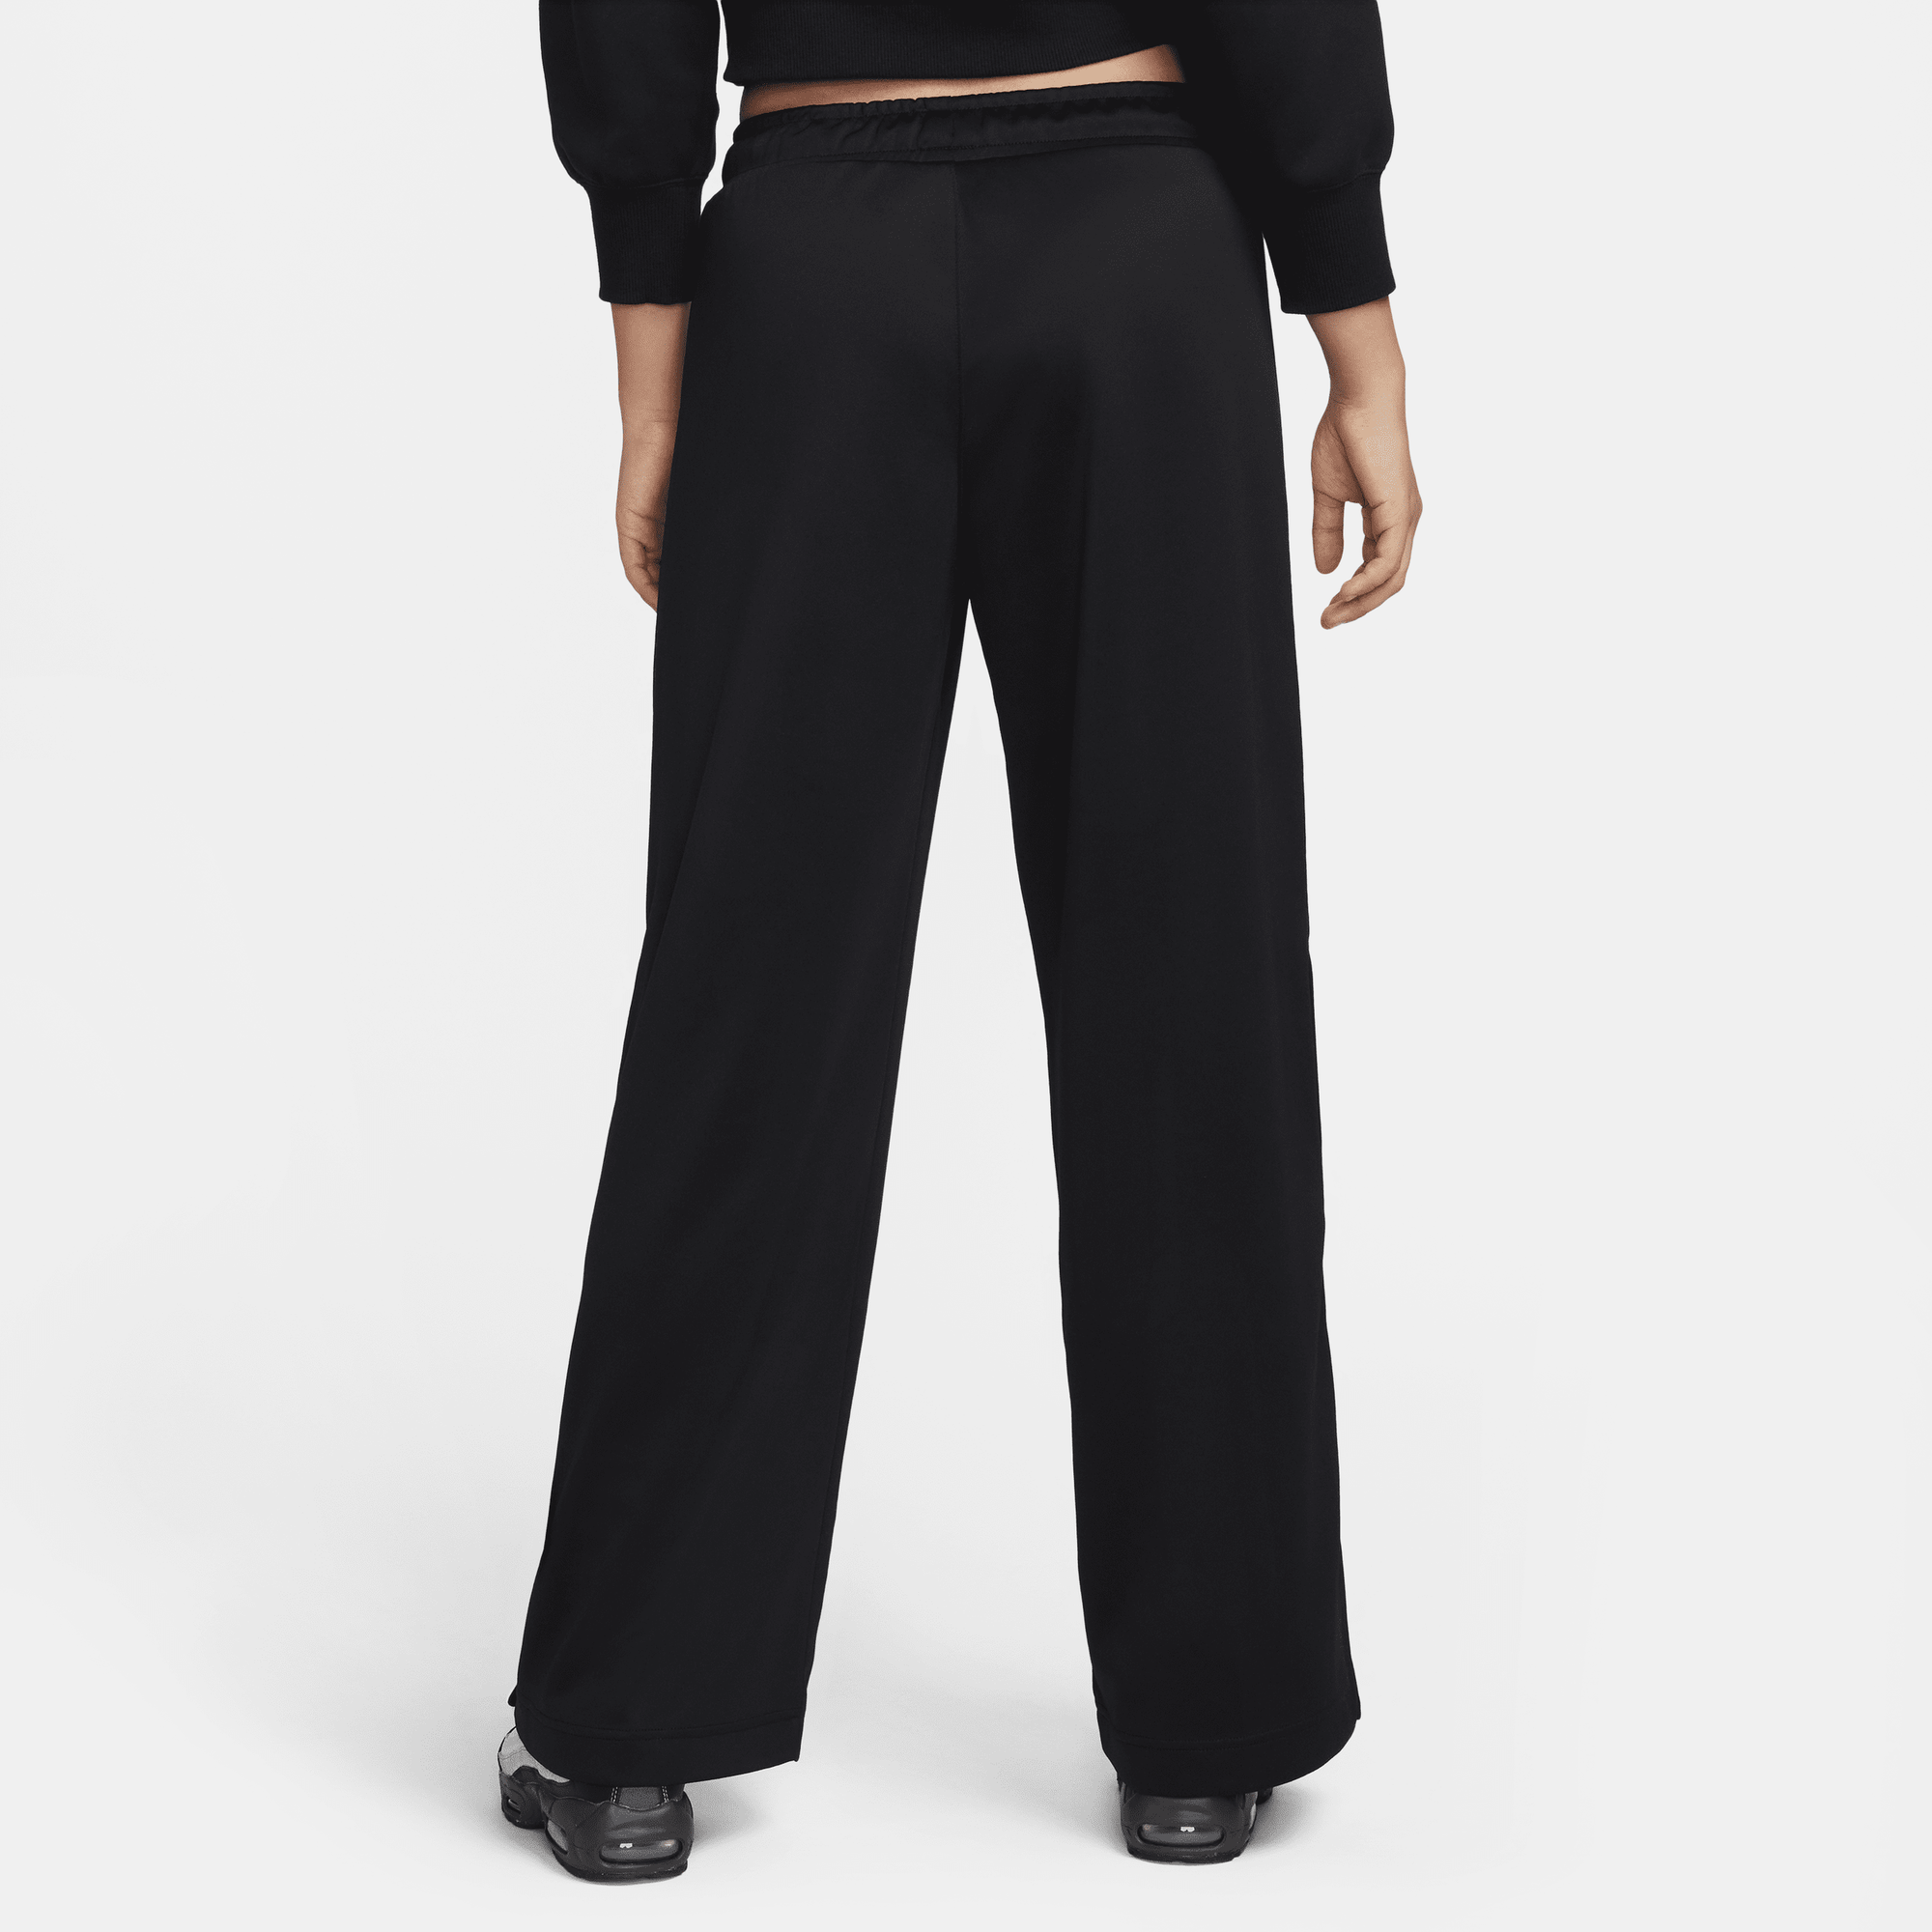 Shop Sportswear Women's Trousers | Nike UAE